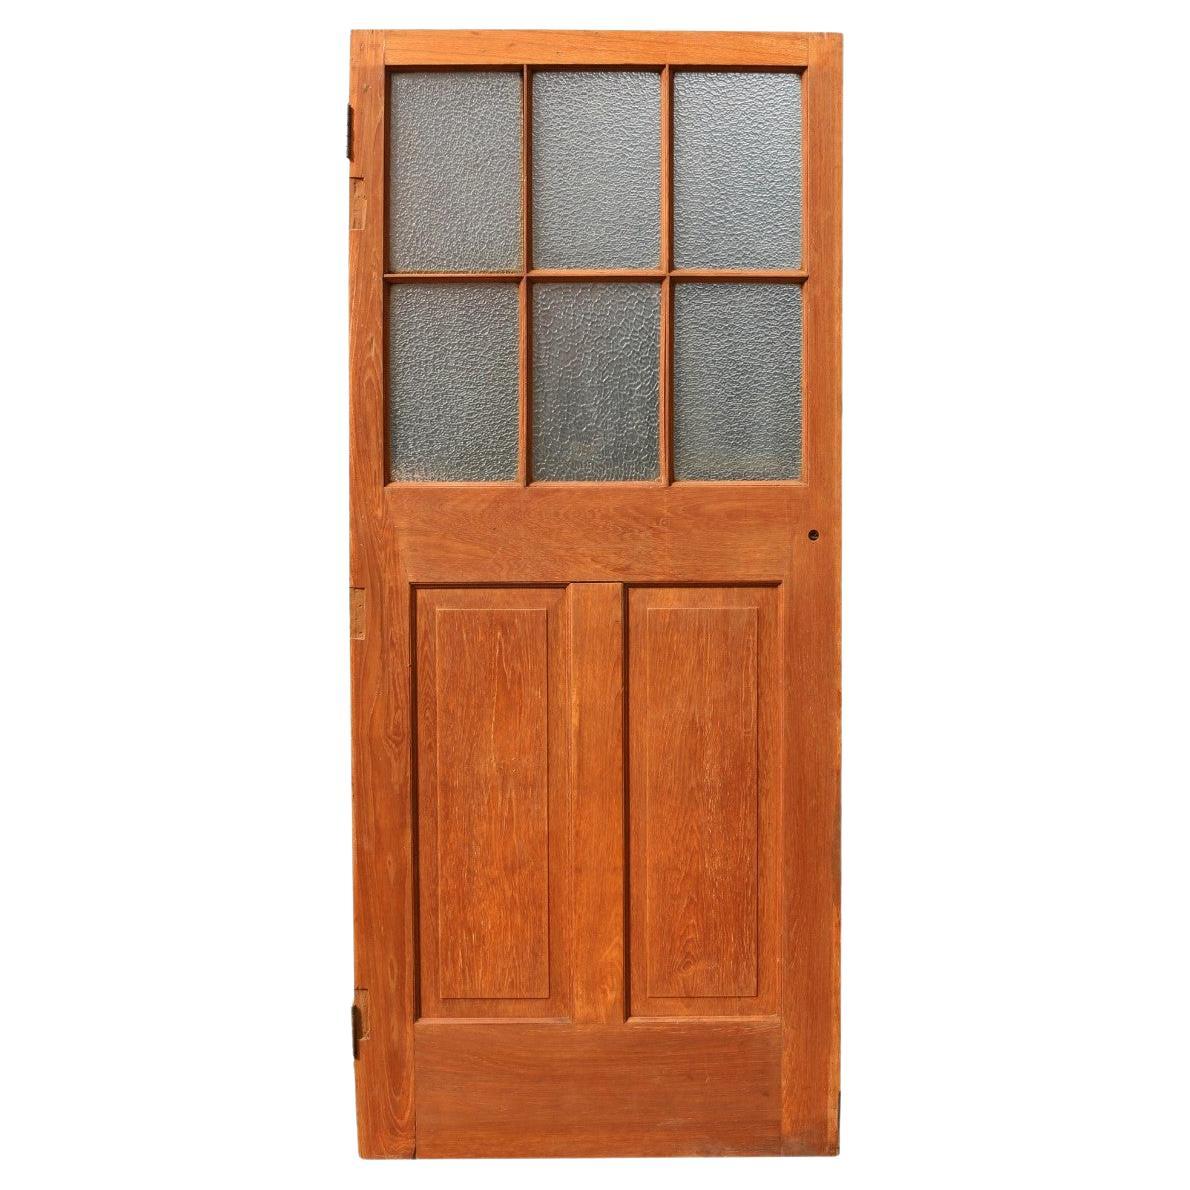 Reclaimed Glazed Teak Wood Door For Sale